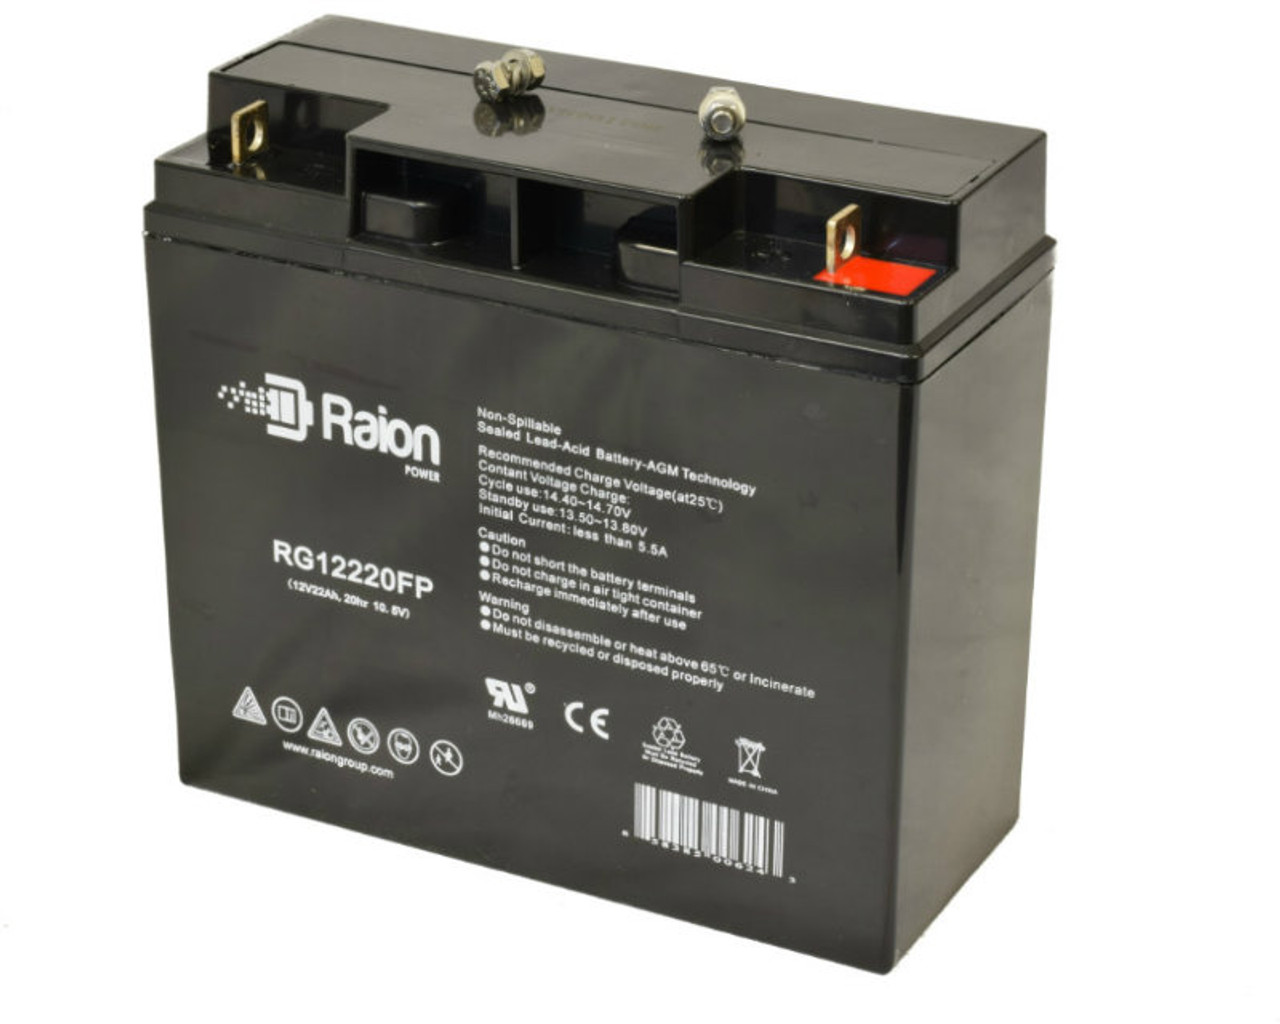 Raion Power RG12220FP 12V 22Ah Lead Acid Battery for Peak 700 Power System Jump Starter